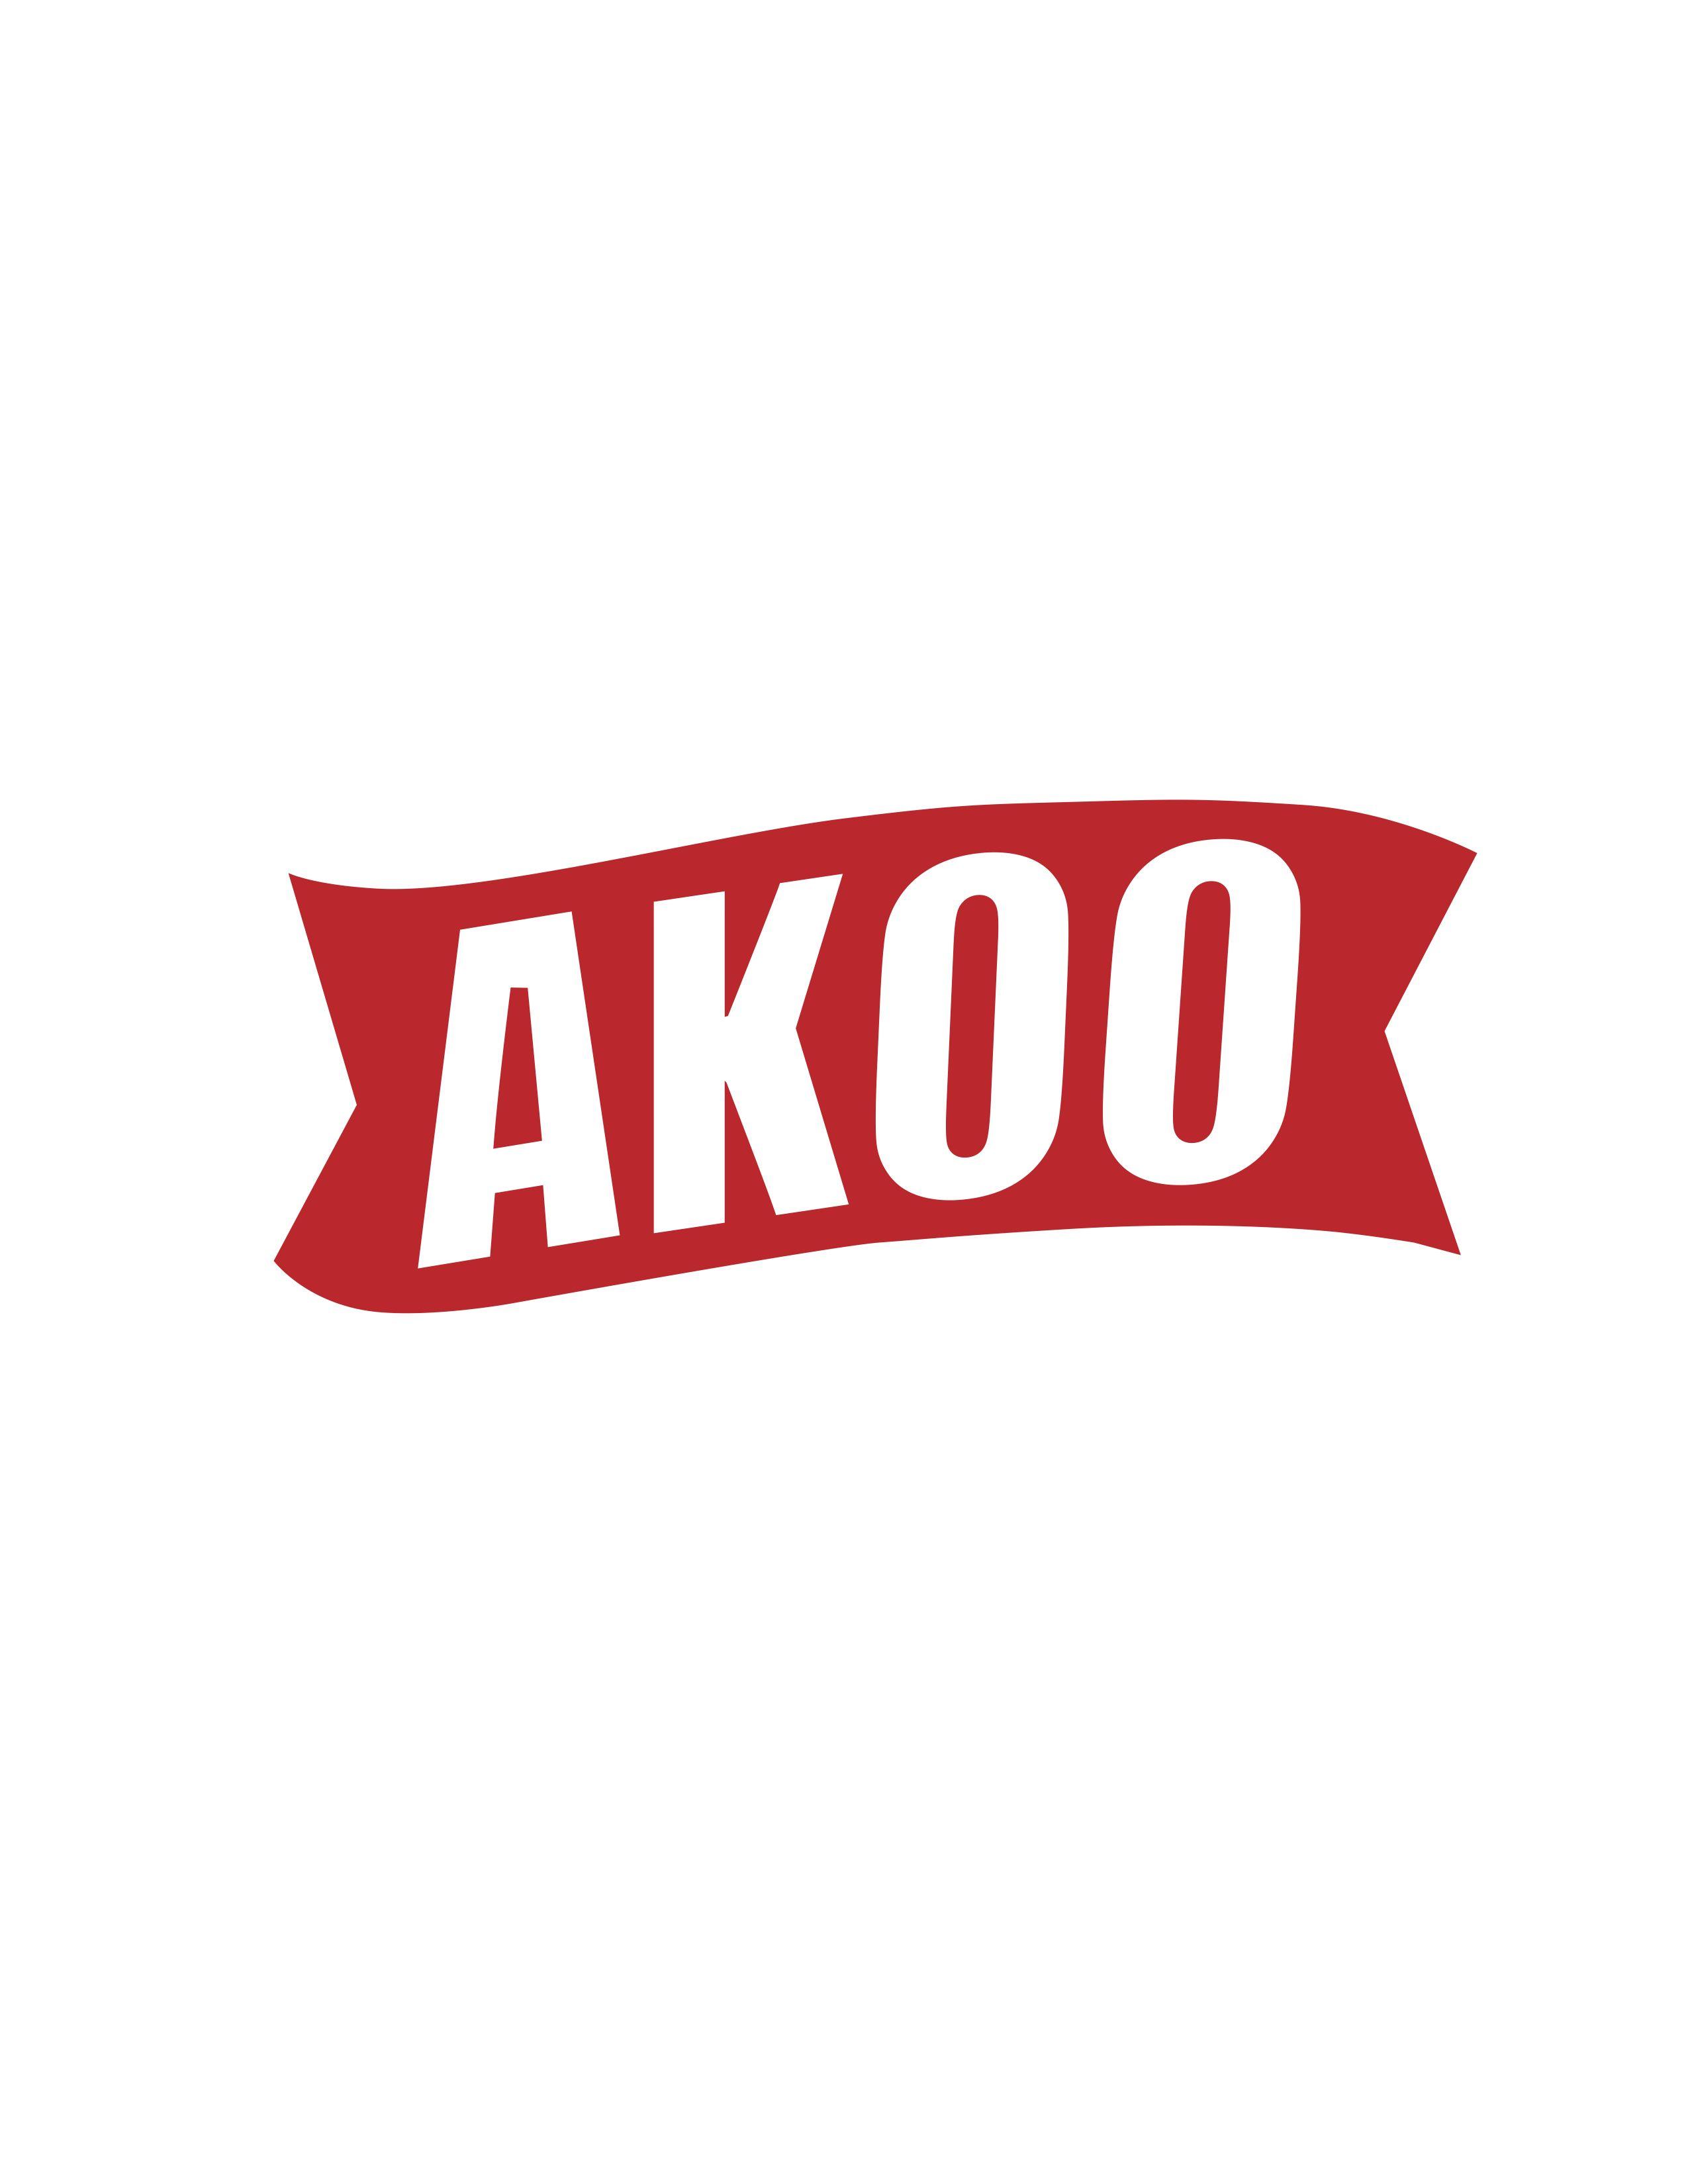 Akoo Logo - Akoo Logos